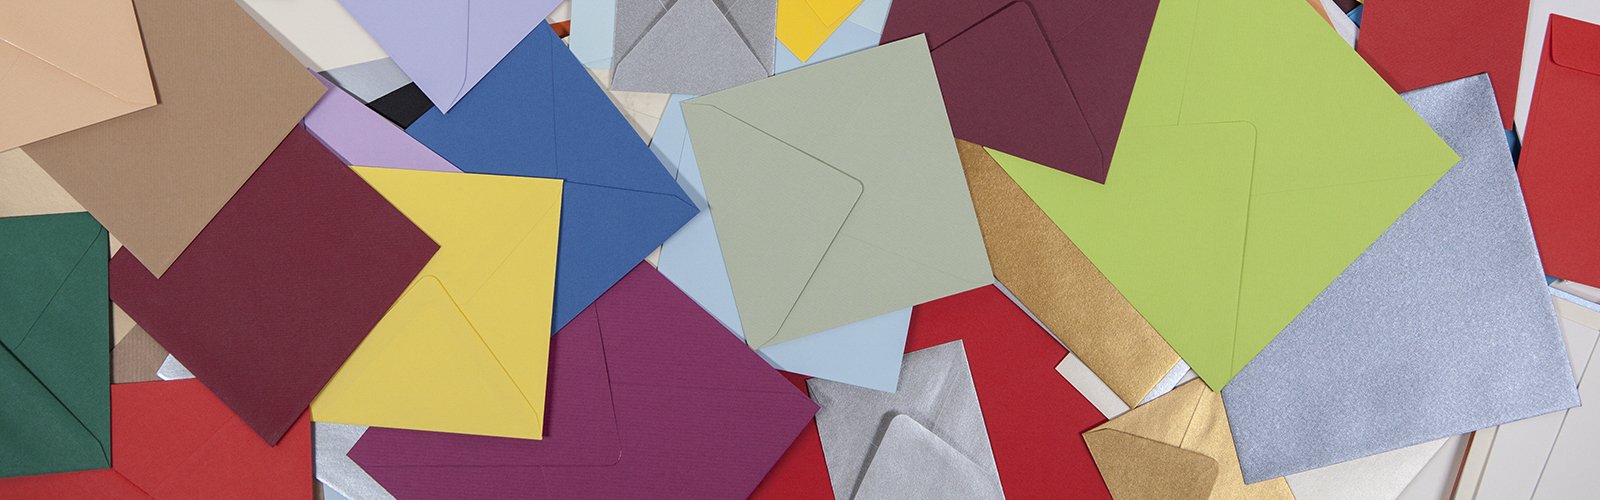 Enveloppes carrées colorées